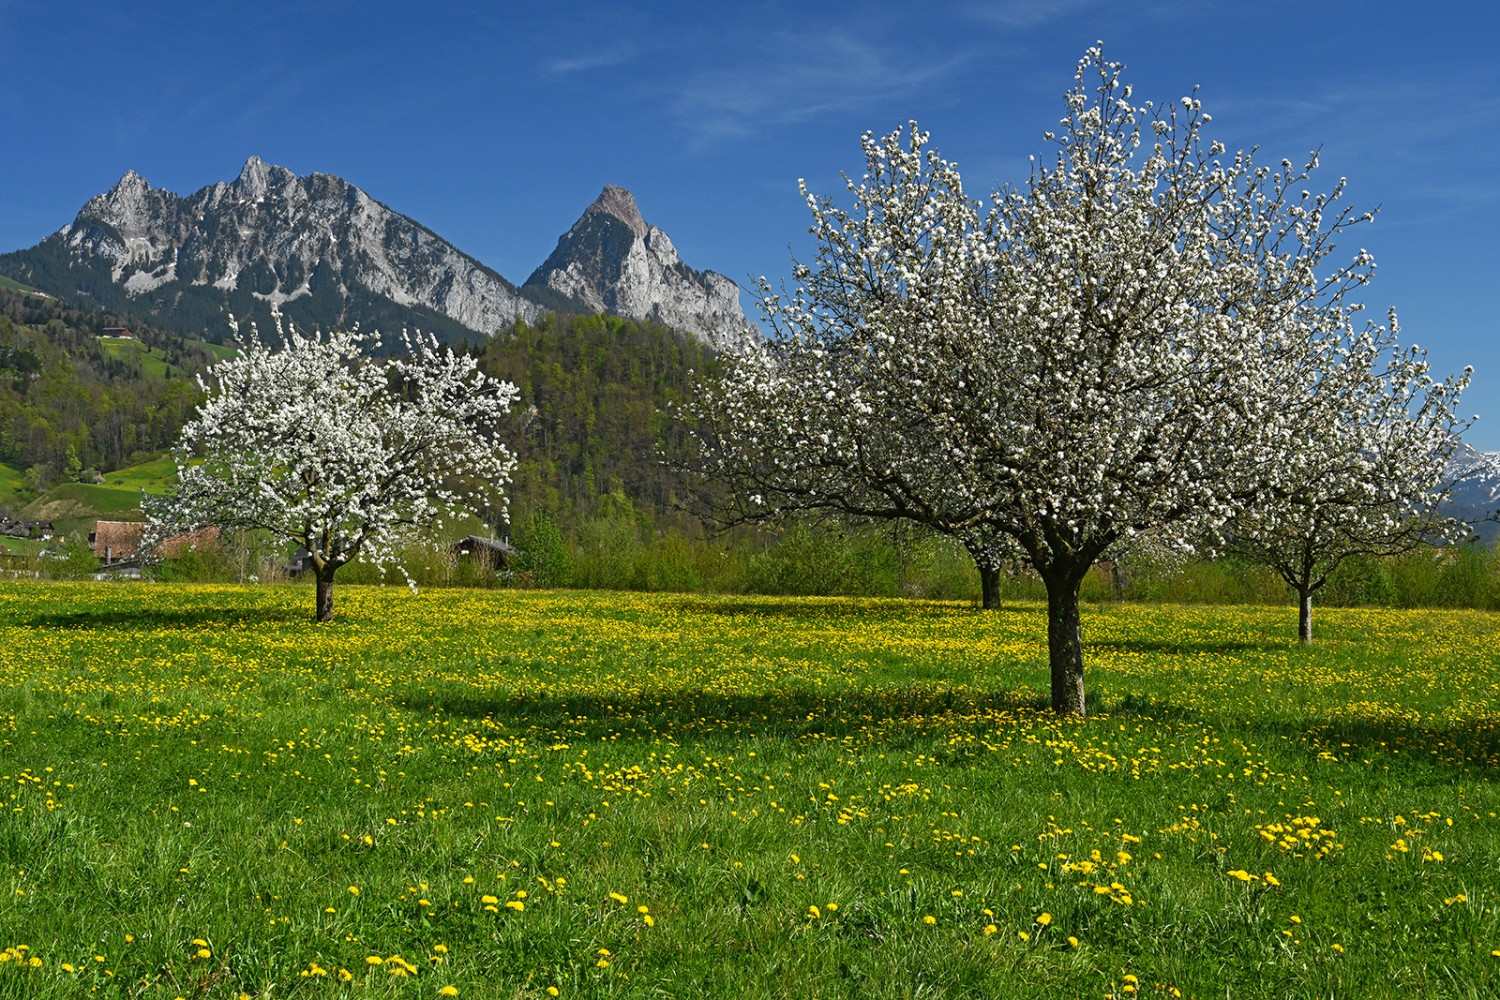 Des milliers de fleurs de cerisier au pied des Mythen.
Photos: natur-welten.ch